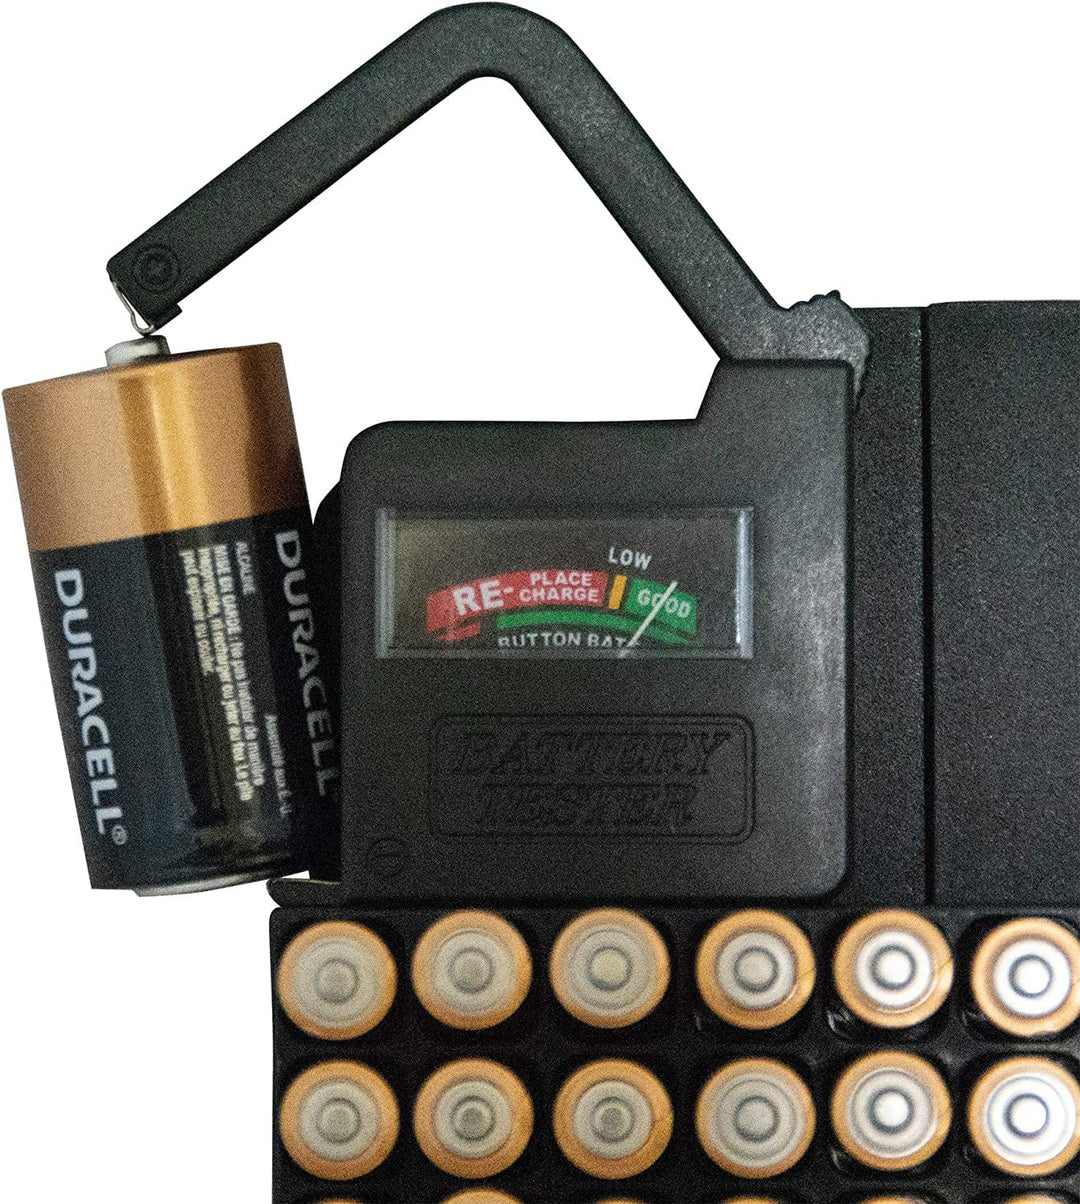 Range Kleen Slim Line Compact Battery Storage Organizer